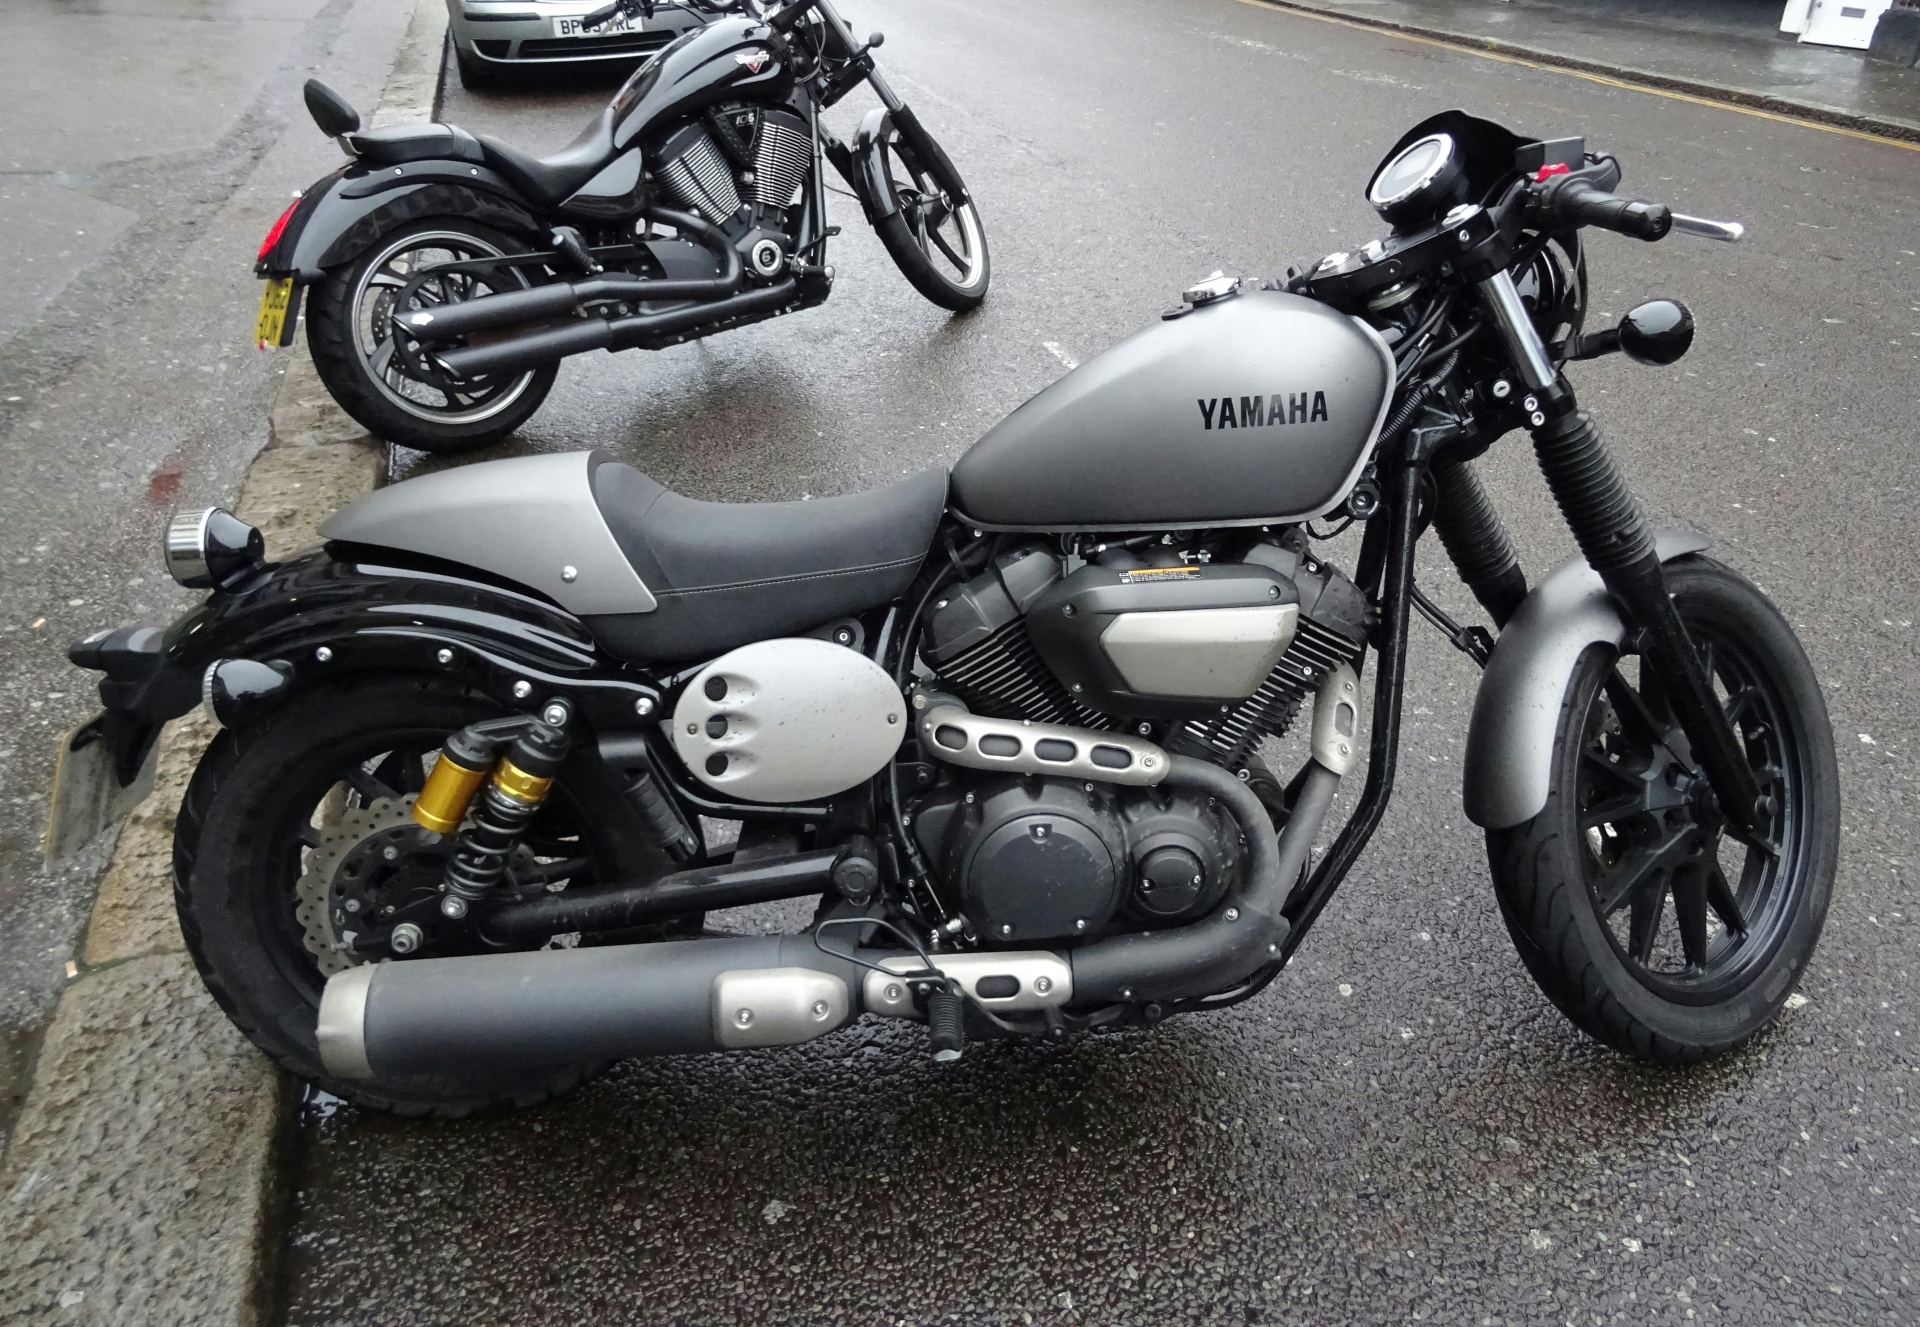 Yamaha 950 Motorcycle